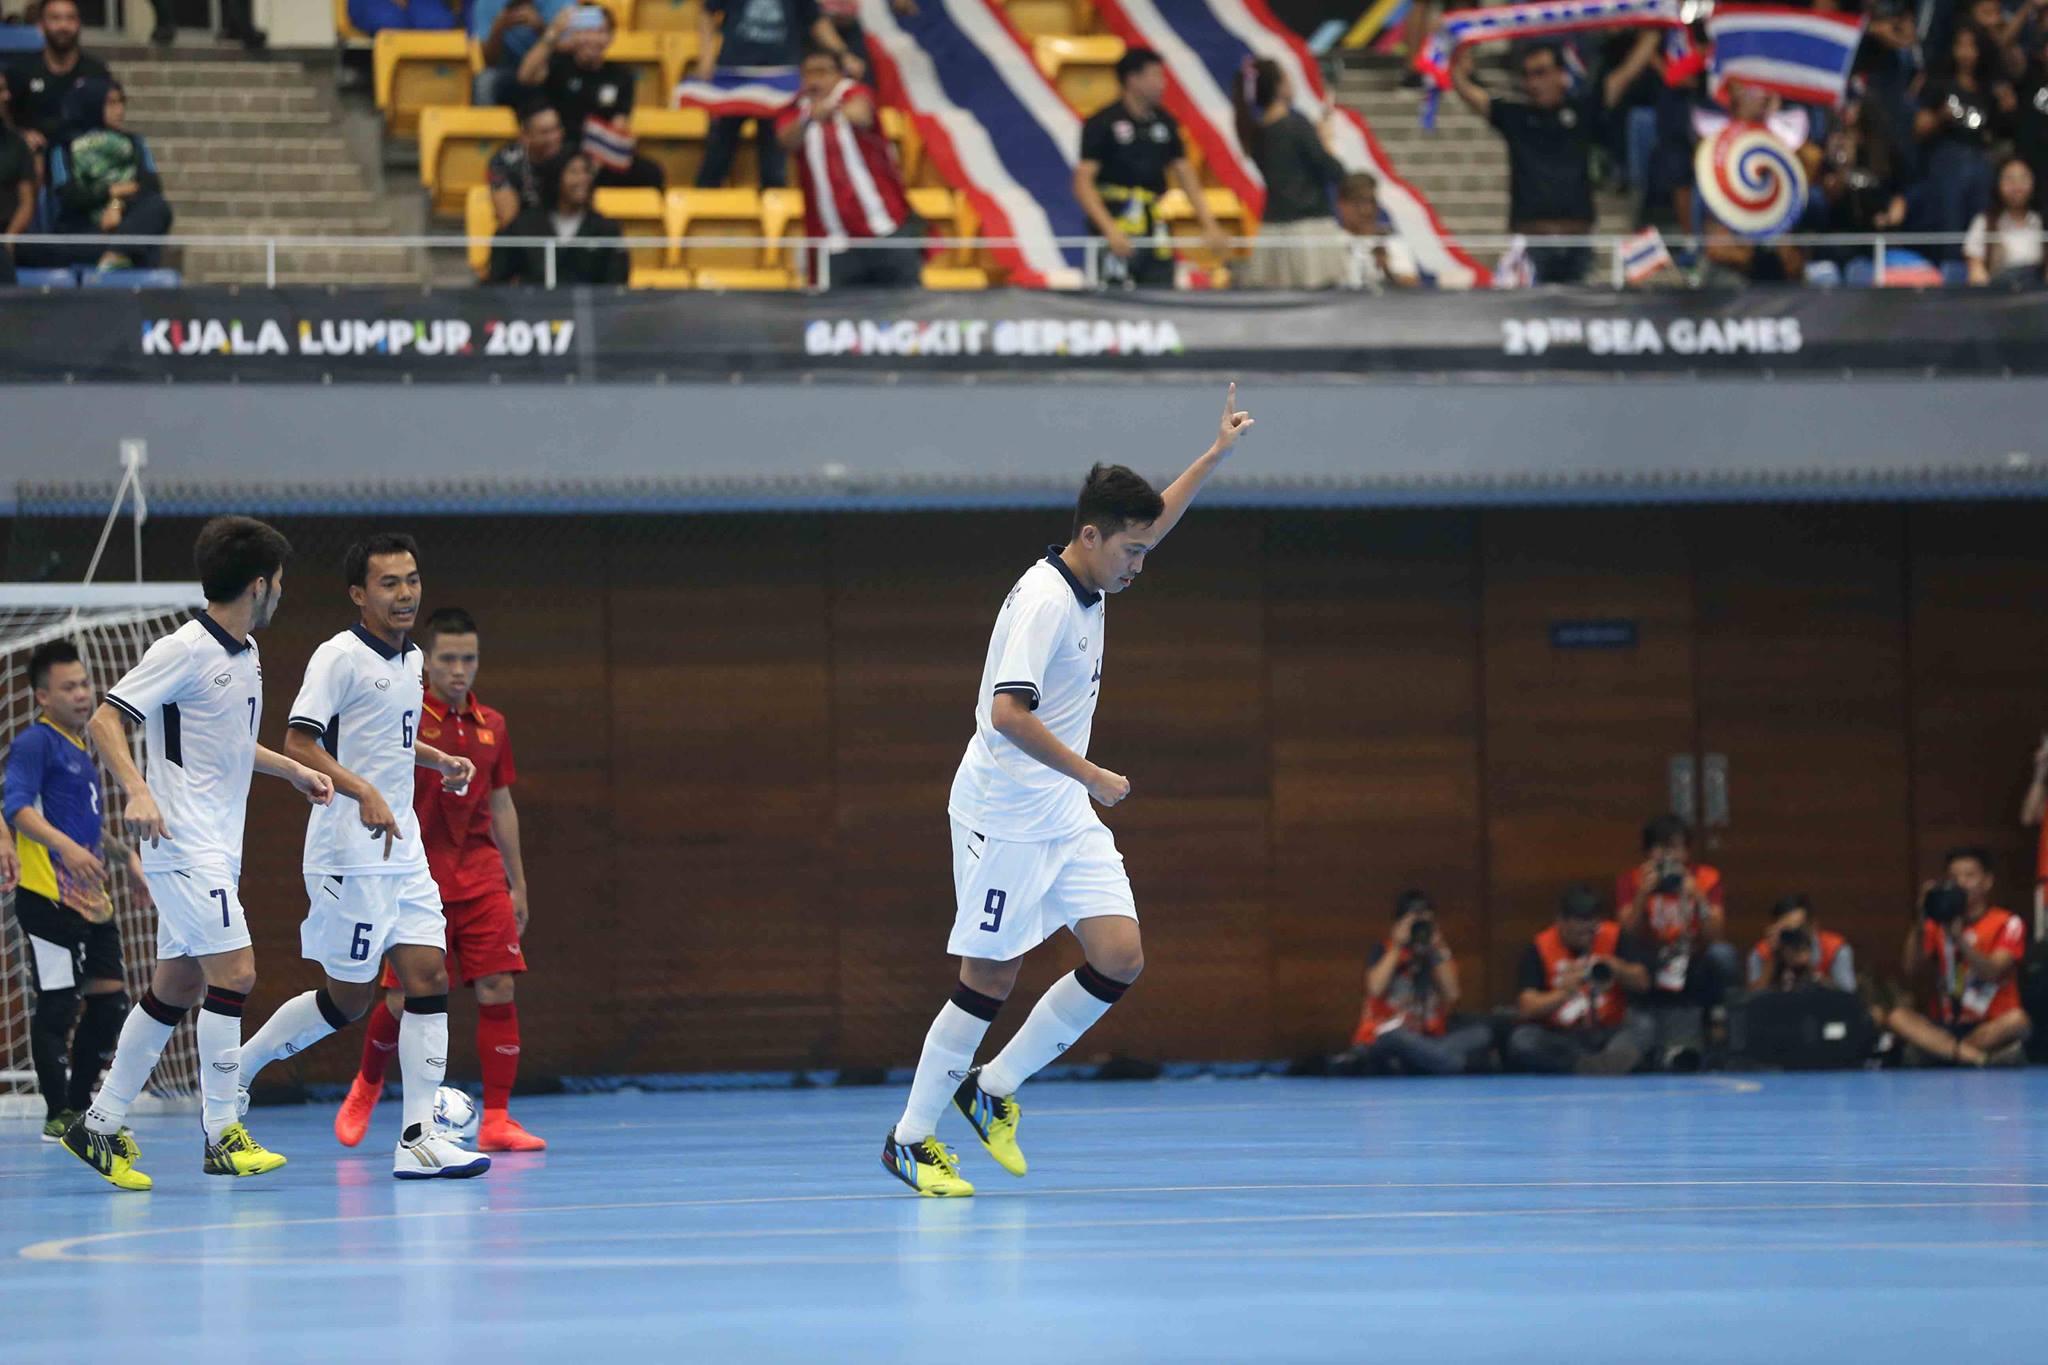 TRỰC TIẾP: Futsal nam Việt Nam 0-1 Thái Lan: Thái Lan mở tỷ số - Bóng Đá